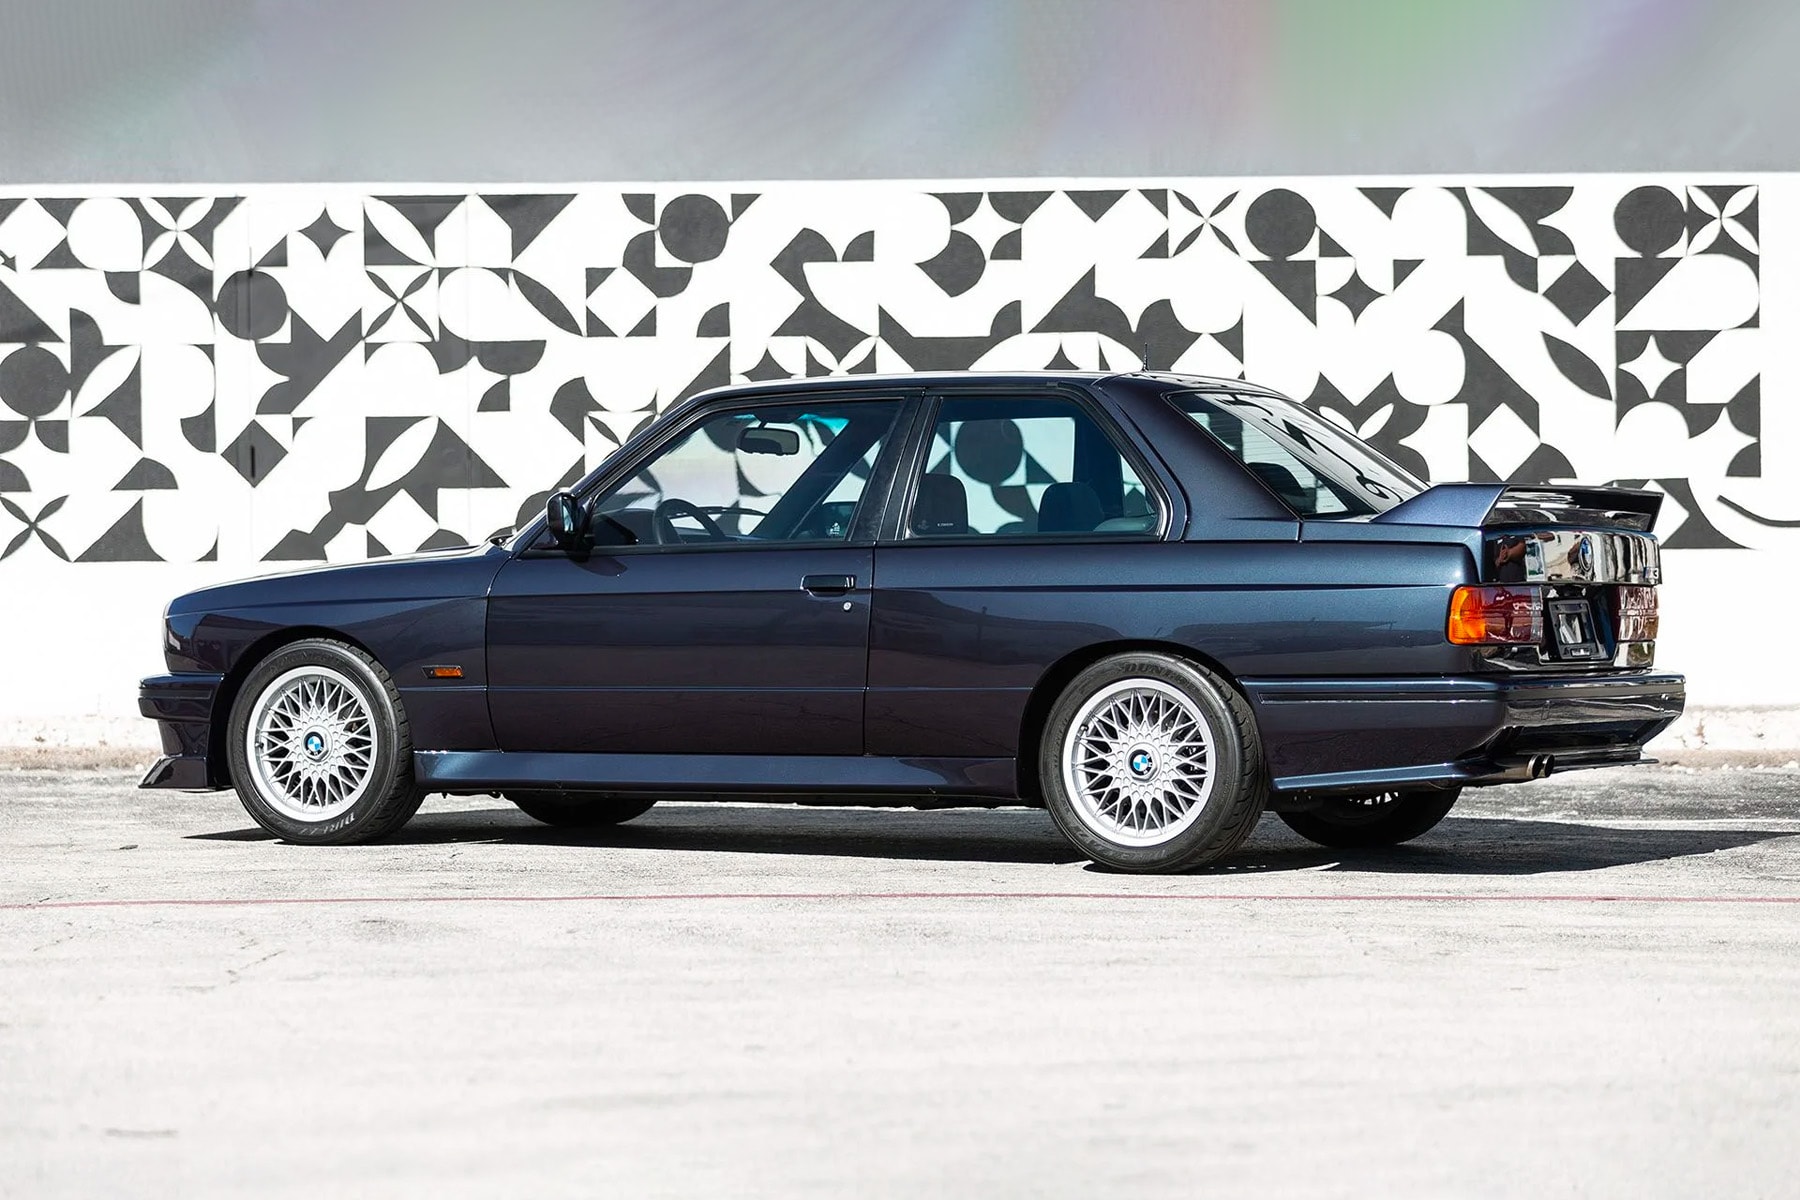 全球限量 501 輛 BMW E30 M3 Evolution II 即將展開拍賣